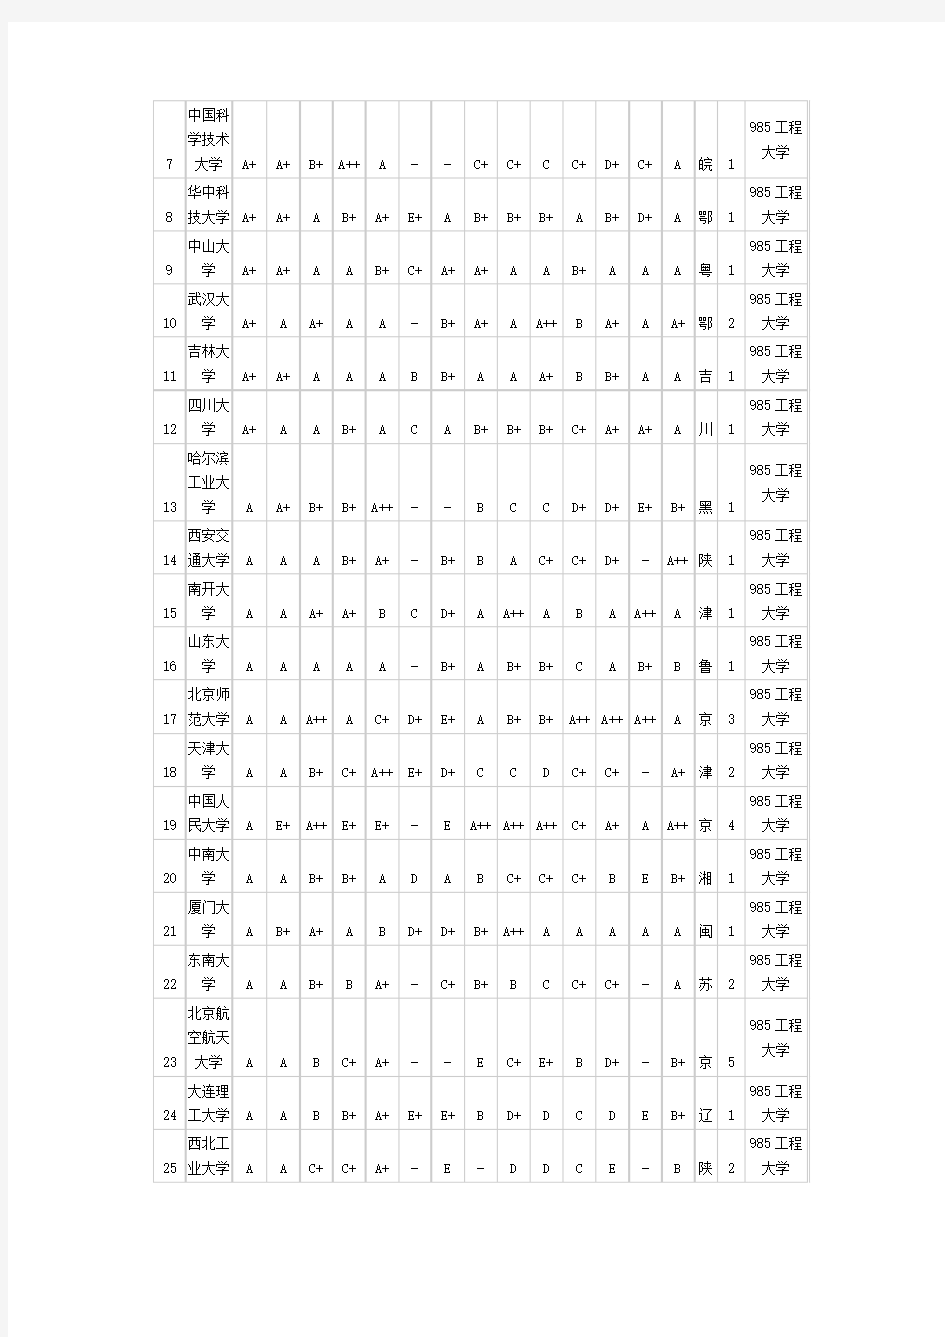 2007中国一流研究生院名单